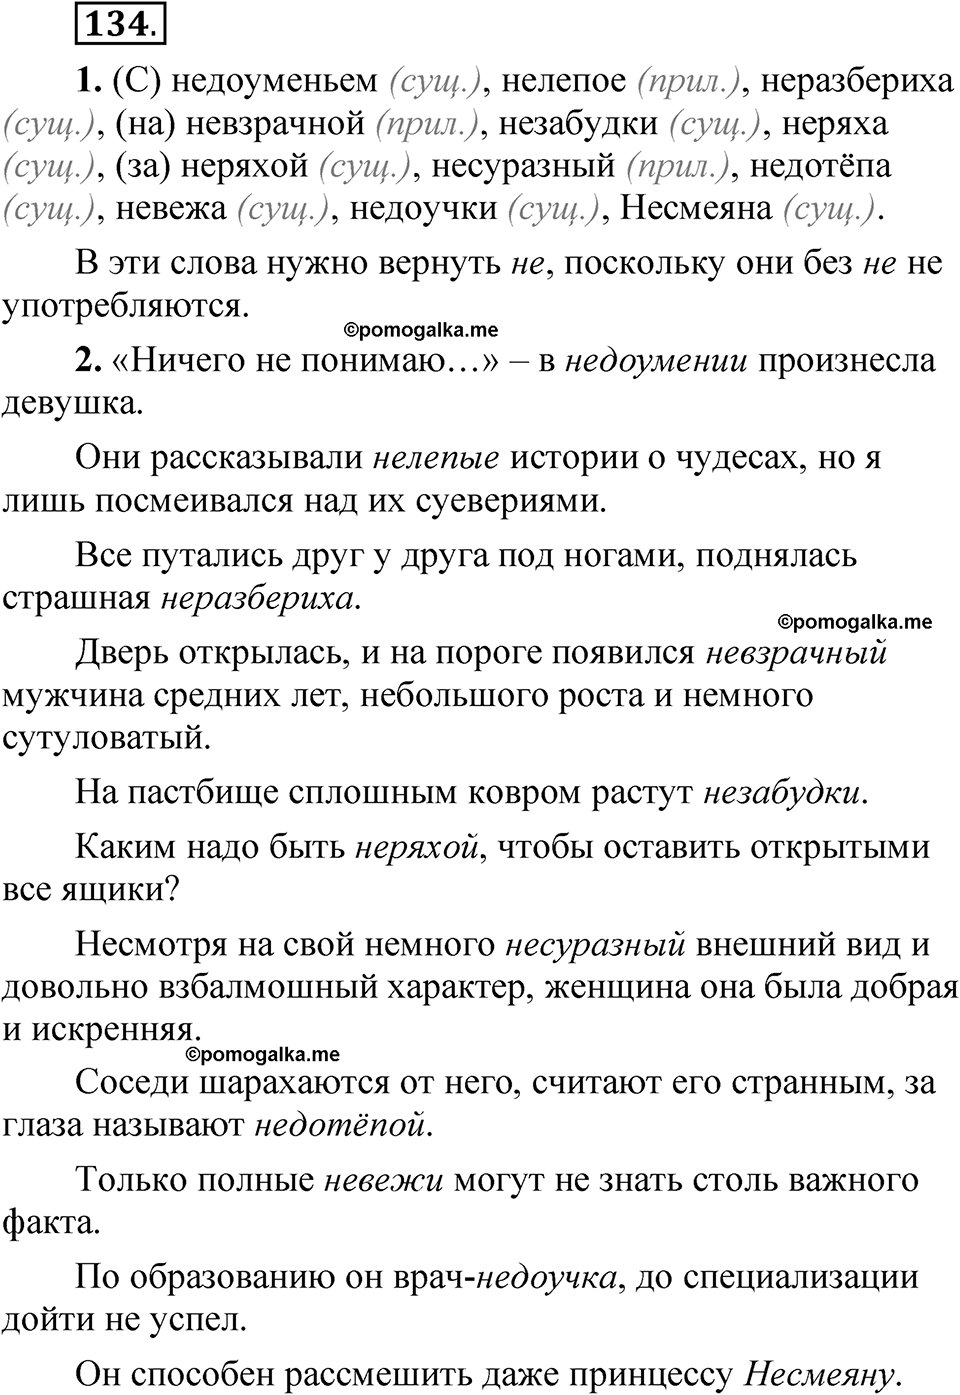 страница 90 упражнение 134 русский язык 5 класс Быстрова, Кибирева 2 часть 2021 год